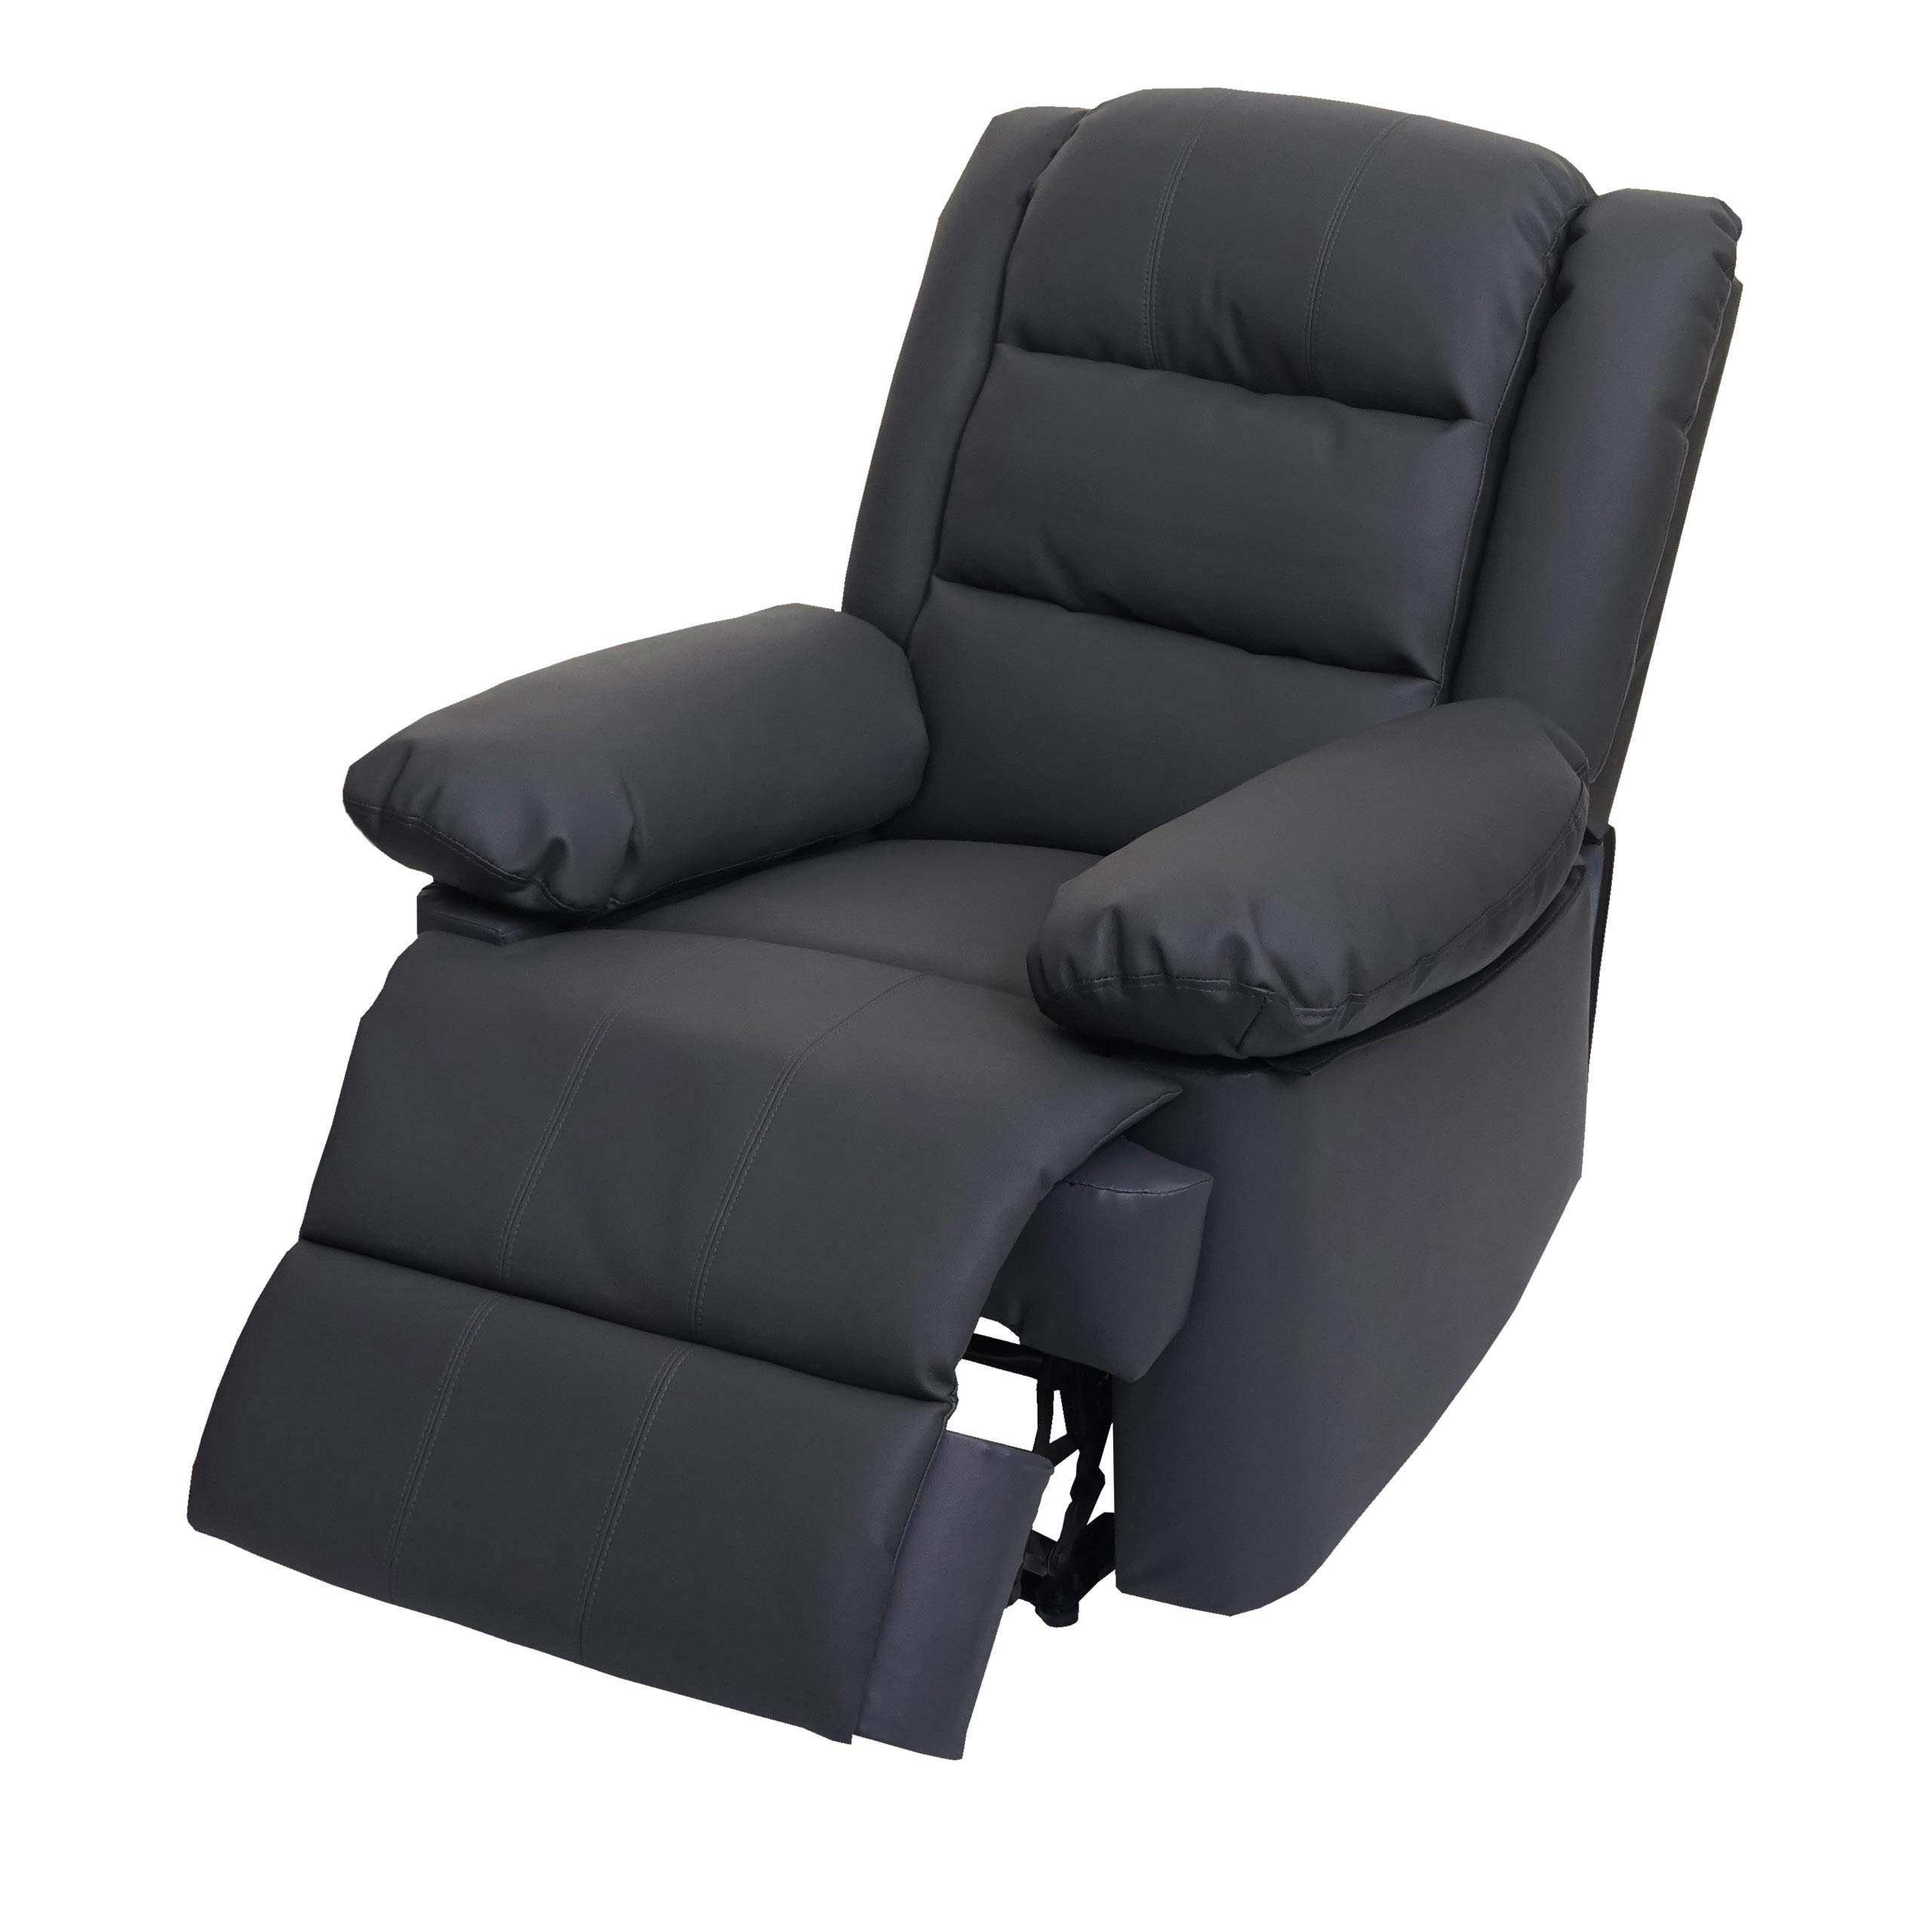 MCW TV-Sessel MCW-G15, Liegefläche: 165 cm, Verstellbare Rückenfläche, Fußstütze verstellbar, Liegefunktion grau